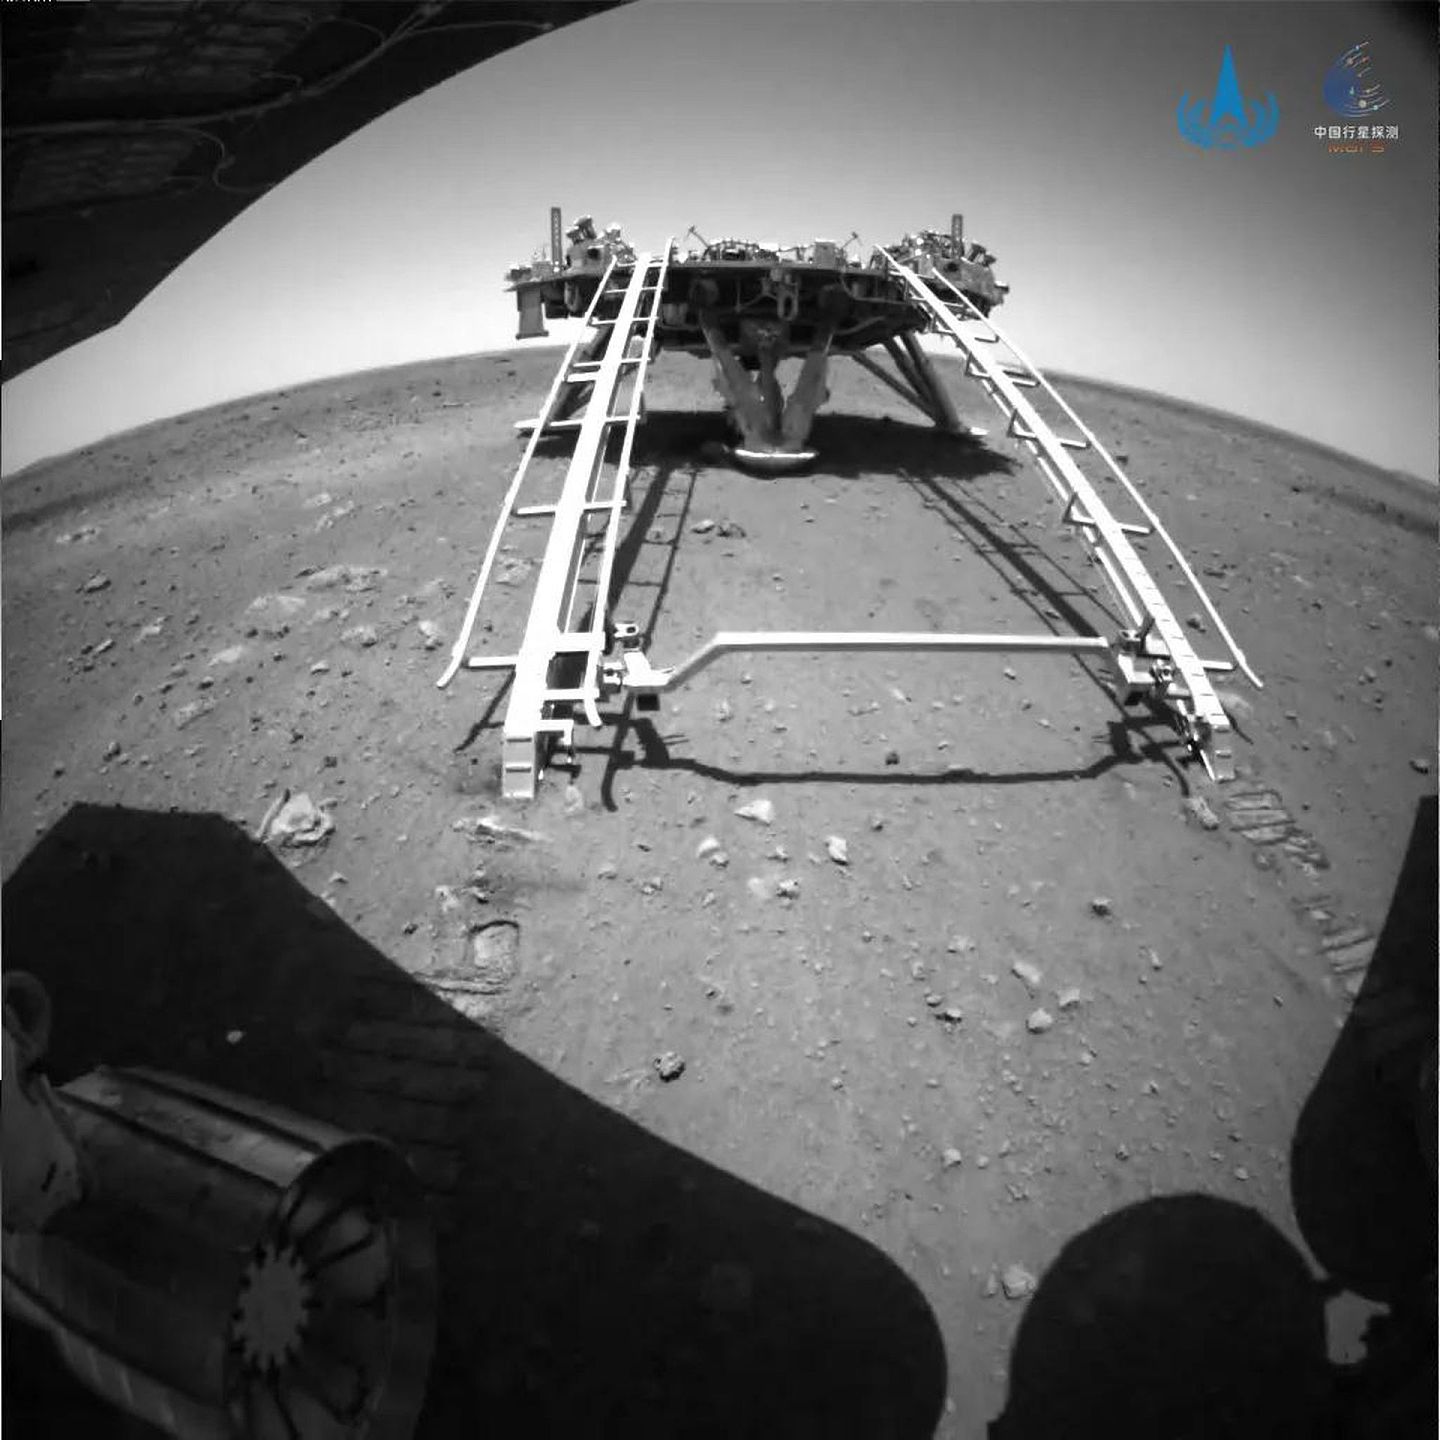 2021年5月22日，“祝融”号火星车已安全驶离着陆平台，到达火星表面，开始巡视探测。这是由后避障相机拍摄的图片。（中国国家航天局官网）